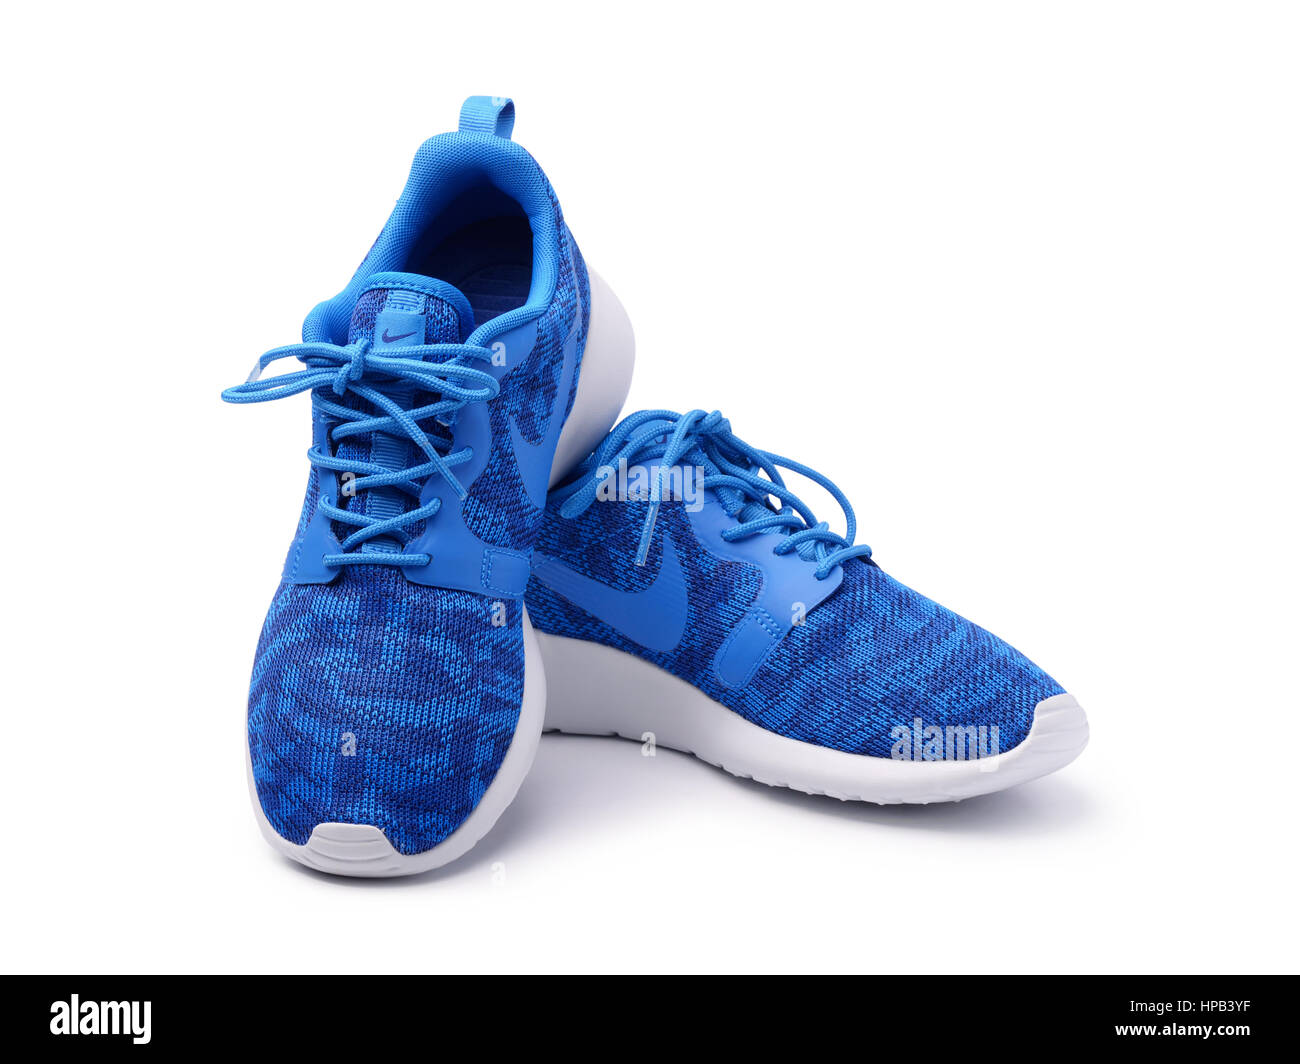 SAMARA, RUSSIE - 8 juin 2015 : femme Nike sneakers pour l'exécution, de la  formation, en gris et bleu, montrant le logo de Nike, de rédaction  d'illustration Photo Stock - Alamy